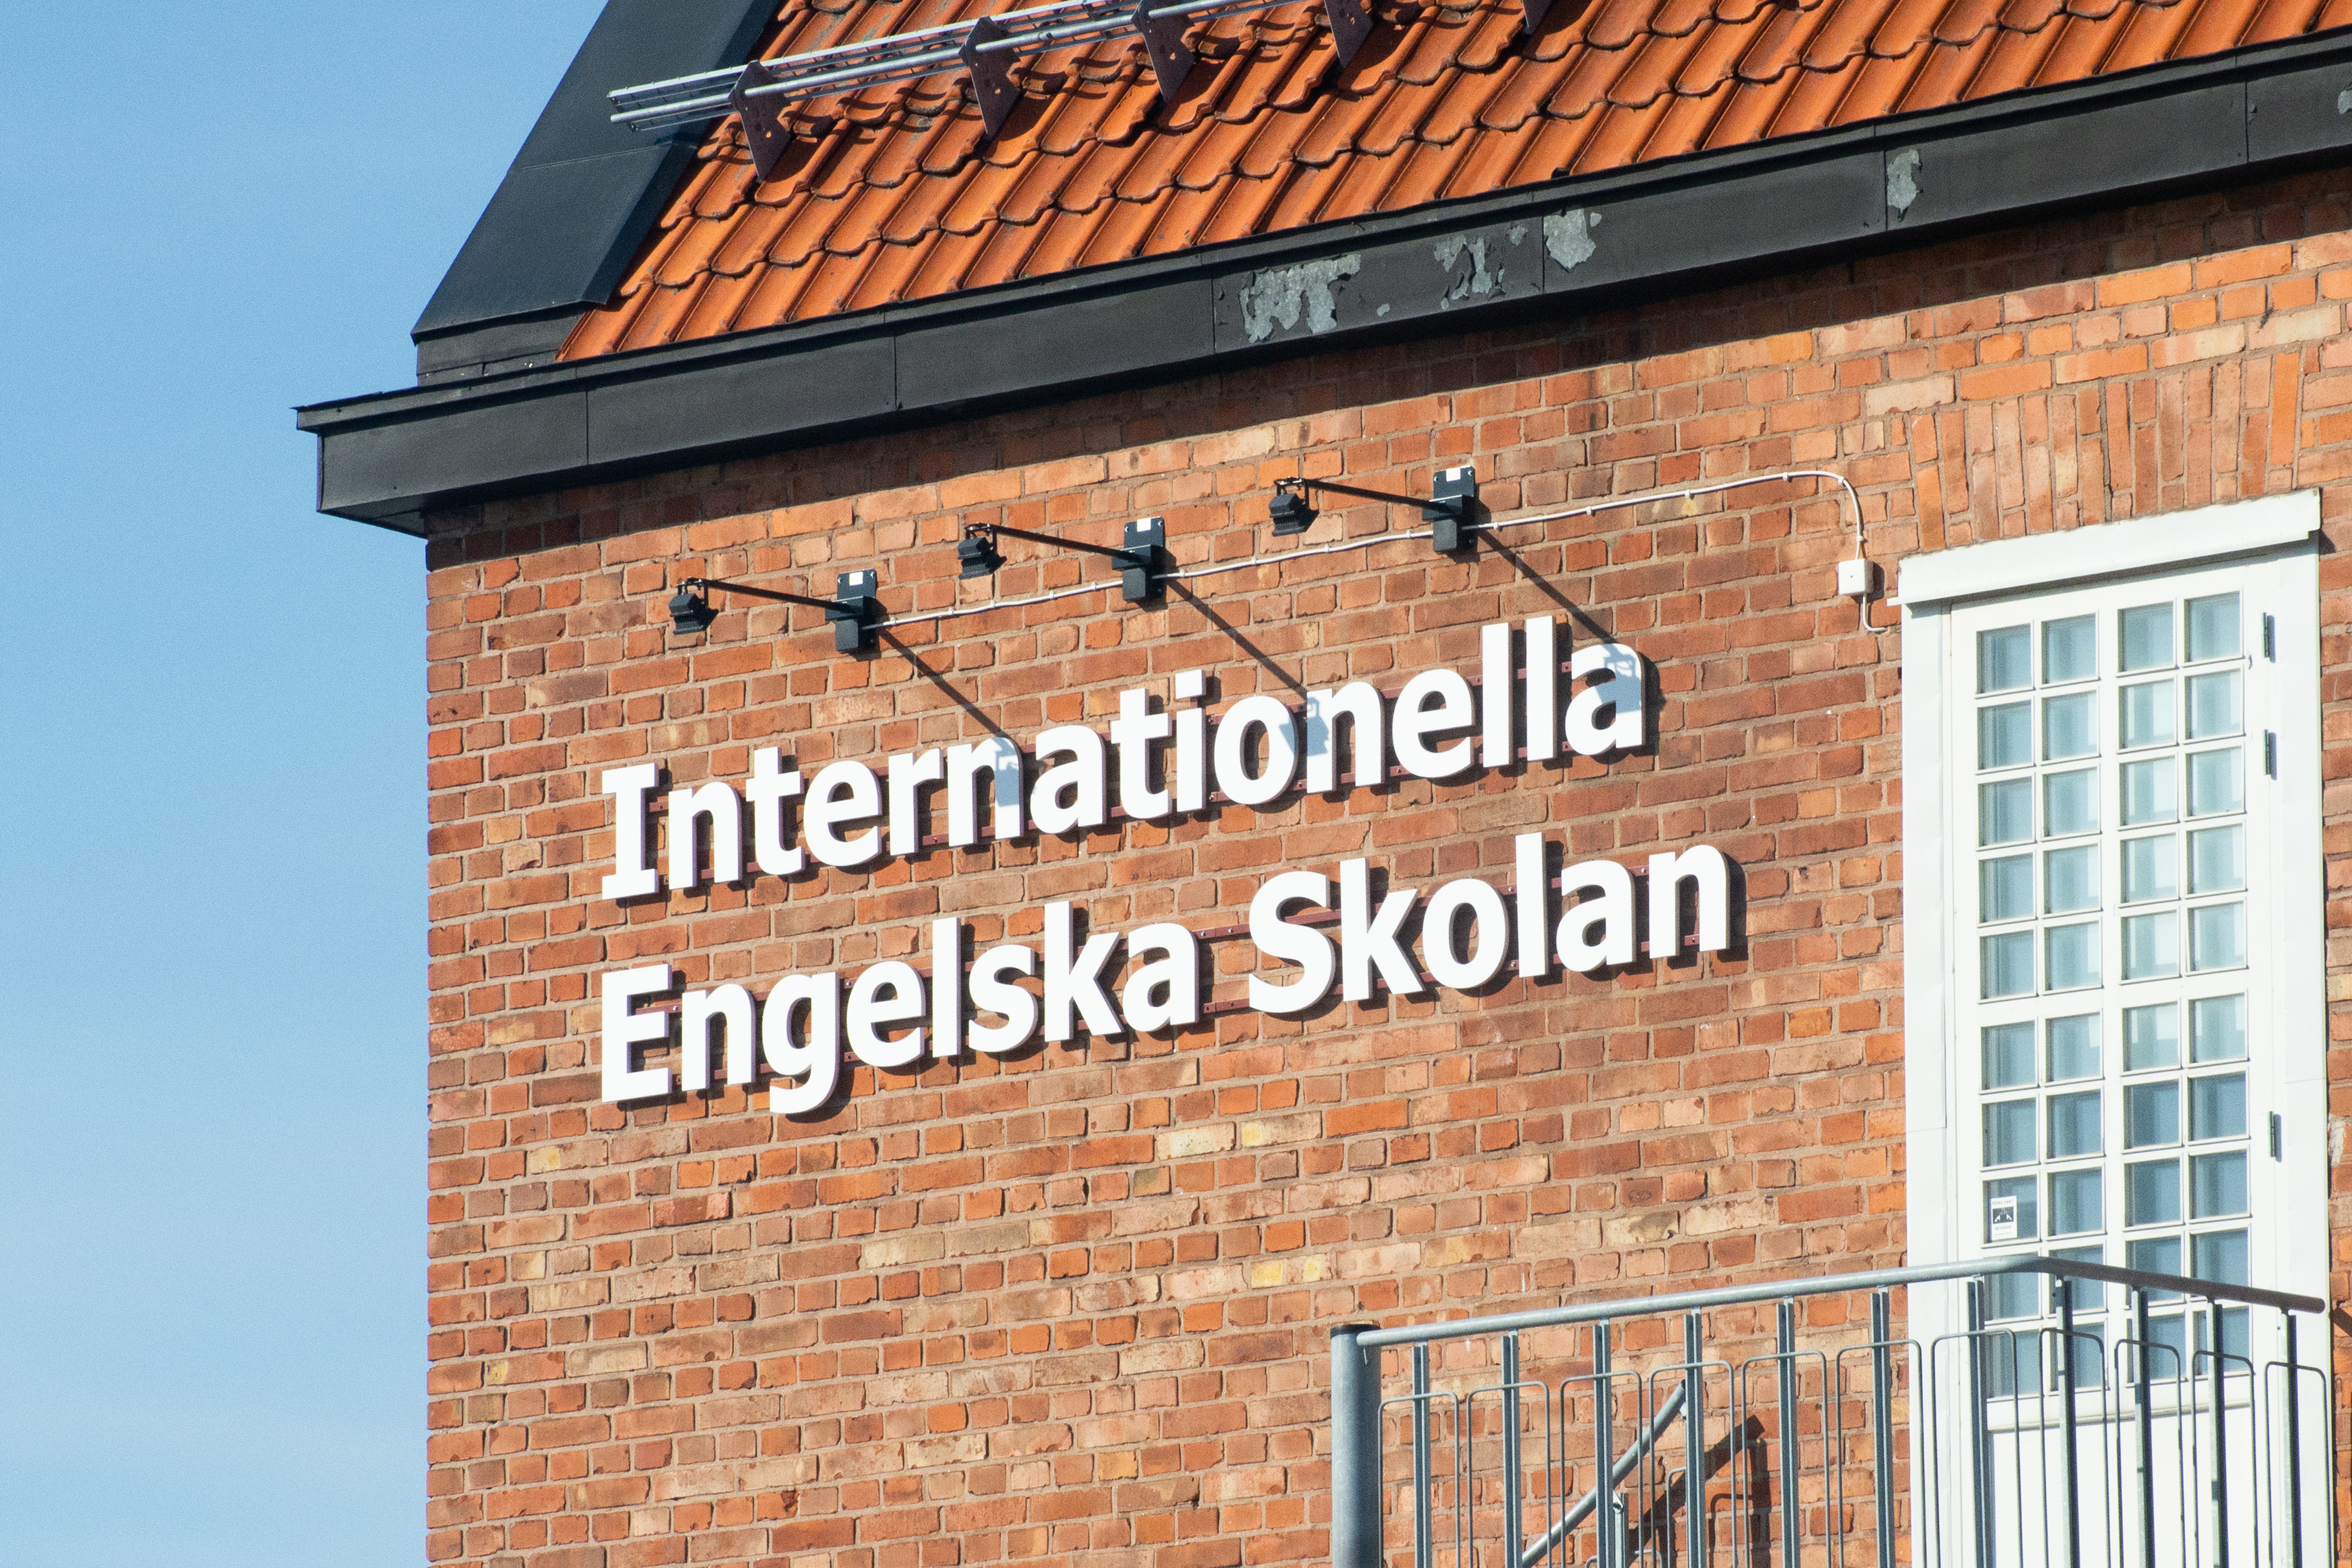 Felaktigt påstående om Internationella Engelska skolan – Sundsvalls Tidning